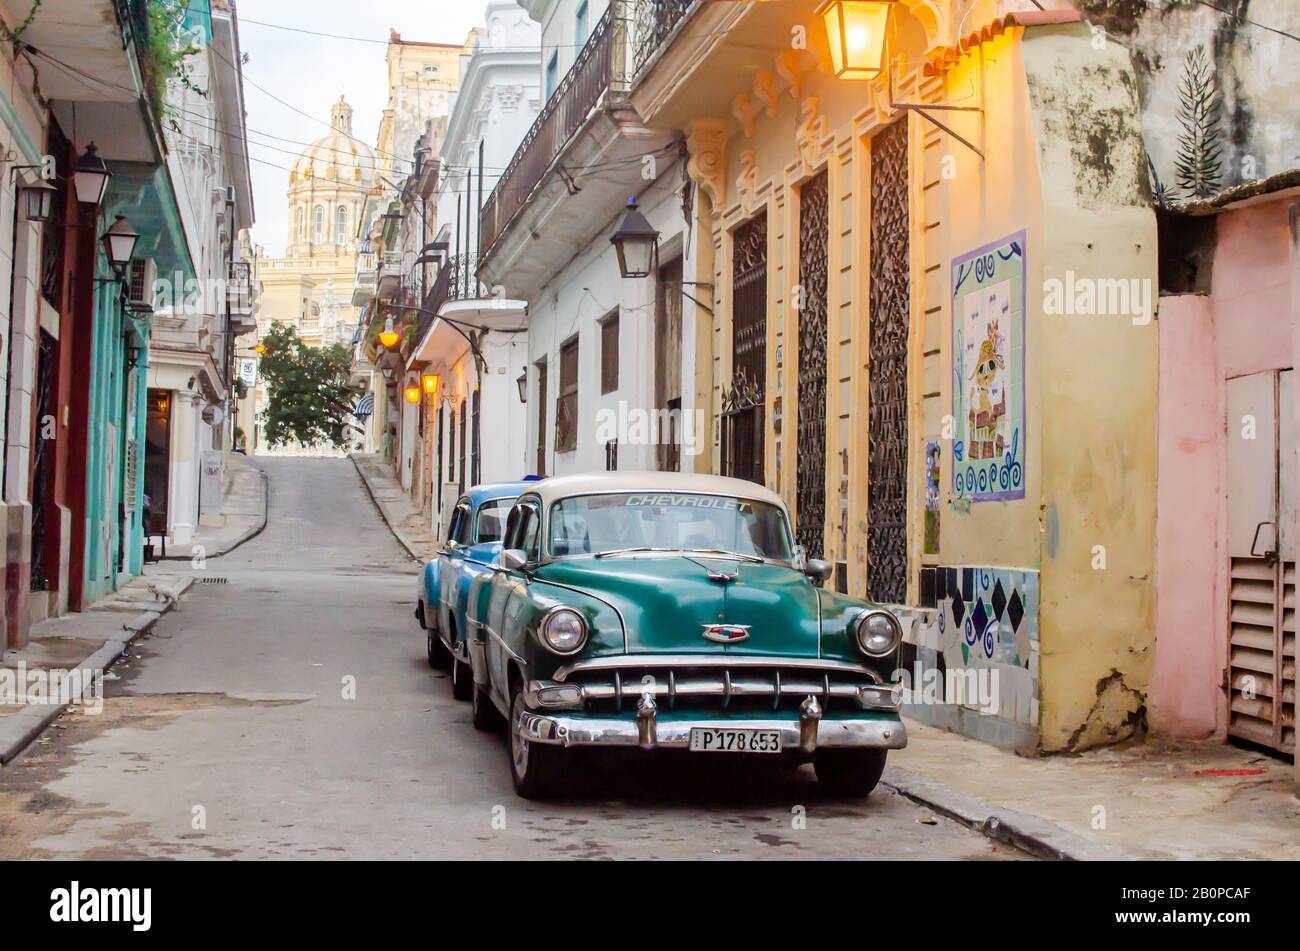 La mattina presto nelle strade dell'Avana Vecchia. Due auto classiche sono viste sulla sinistra e il Museo della Rivoluzione è visto in lontananza Foto Stock